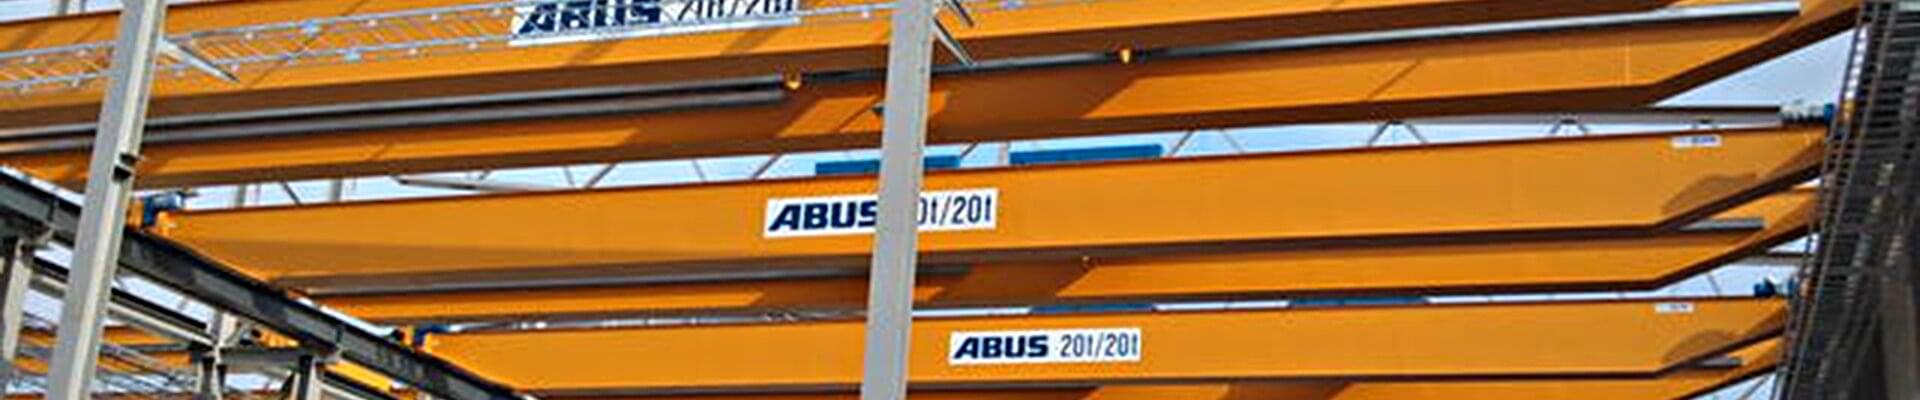 Pont roulant ABUS d'une capacité de charge de 20 t et 20 t dans un hall de production pour la construction métallique en Suède